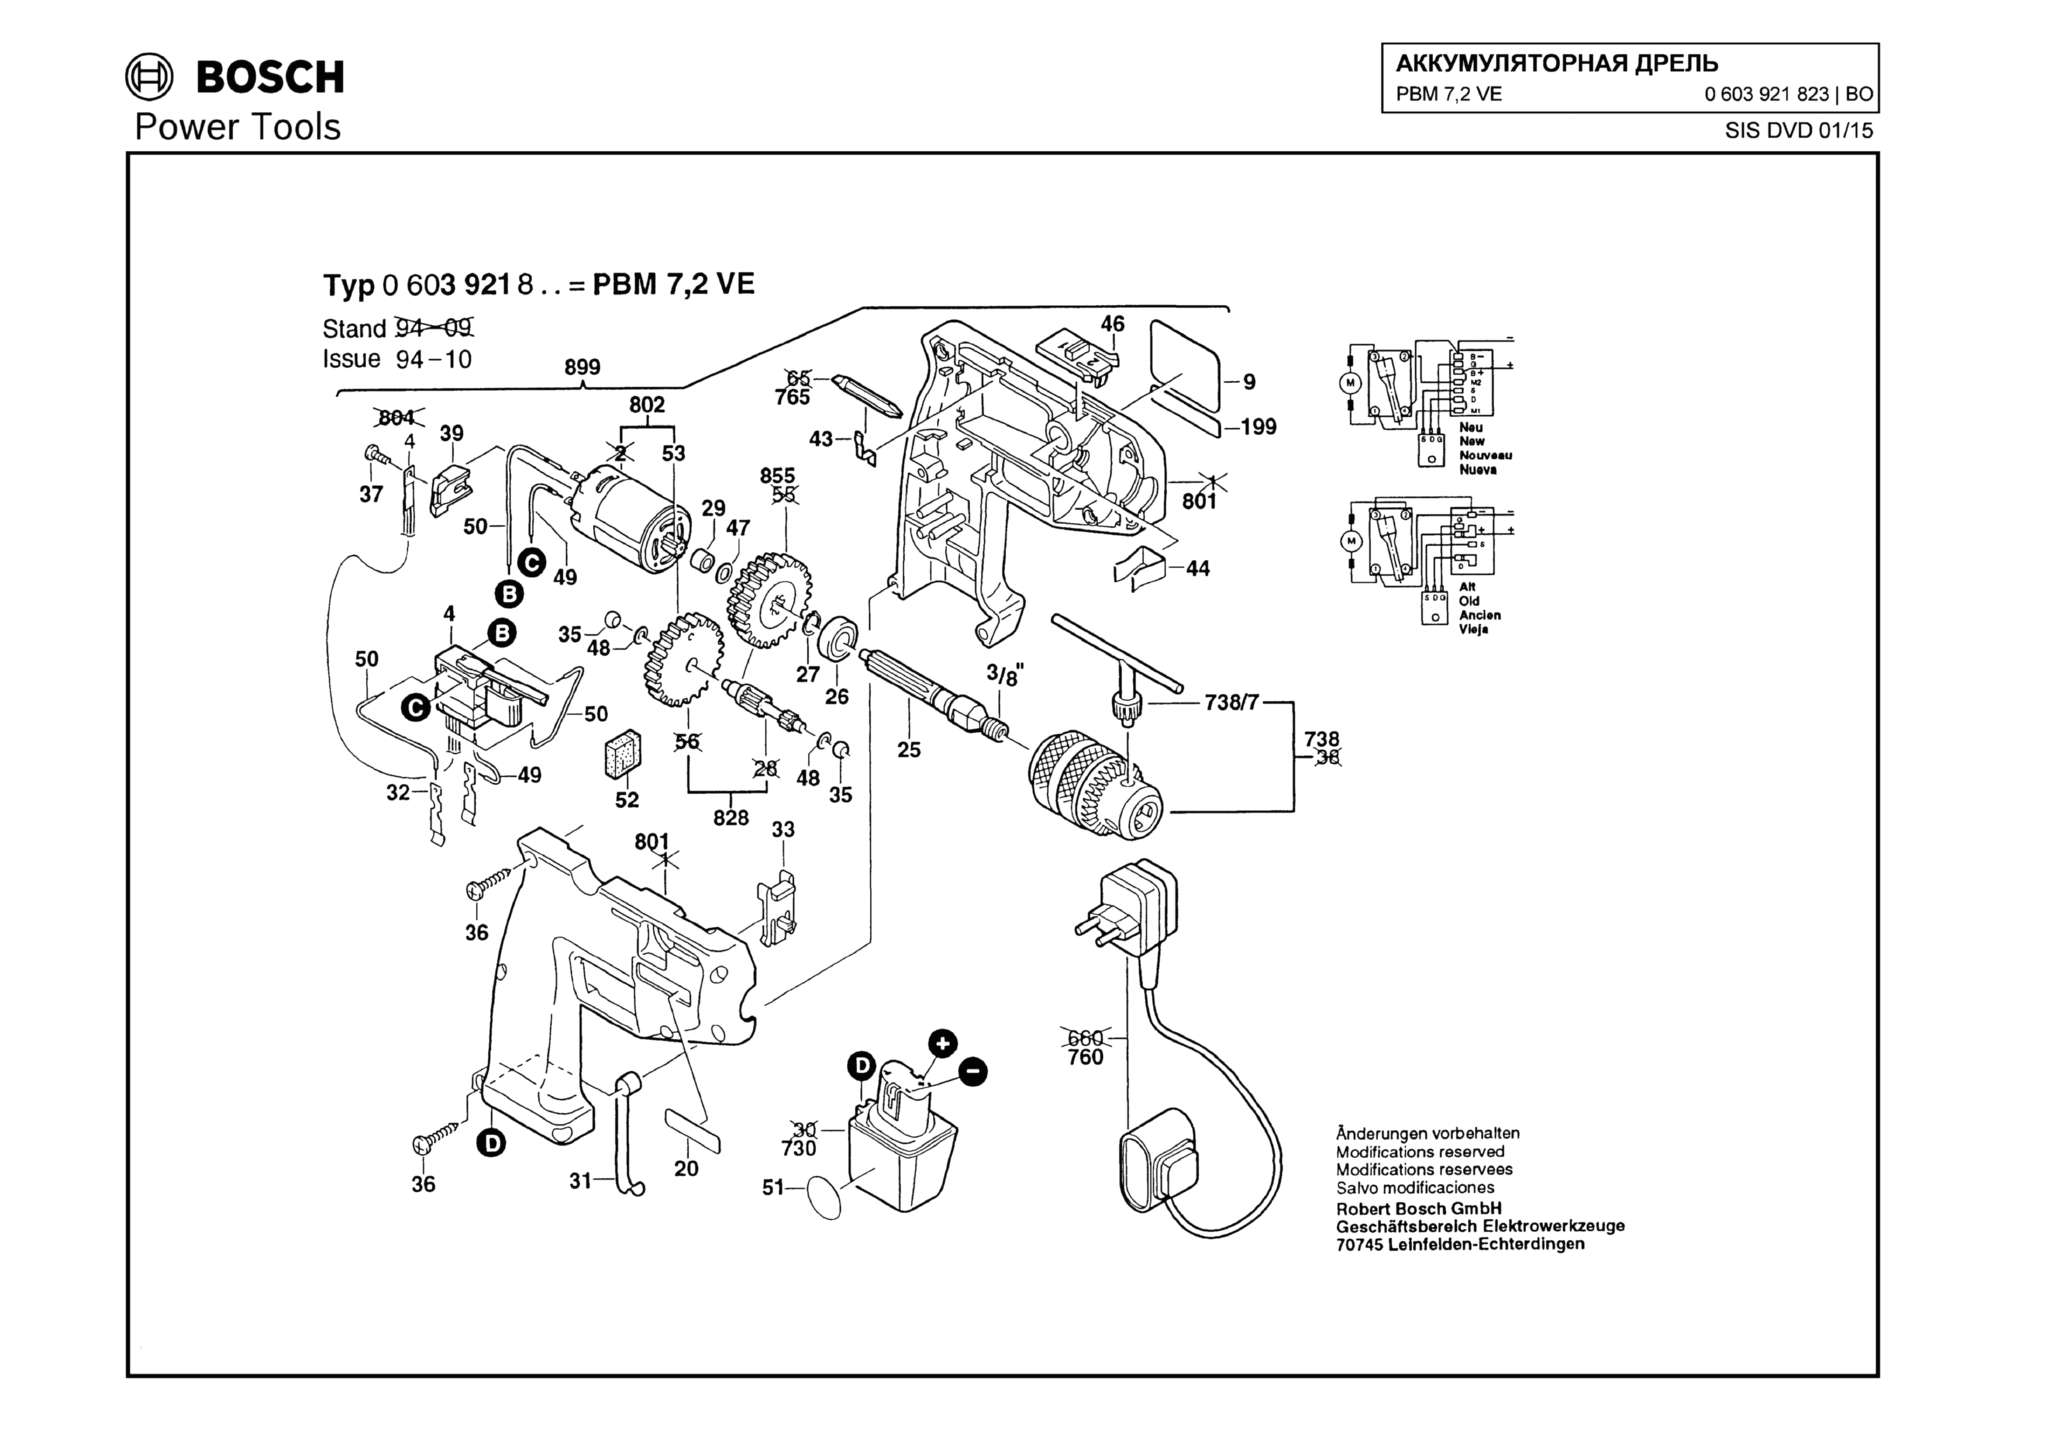 Запчасти, схема и деталировка Bosch PBM 7,2 VE (ТИП 0603921823)